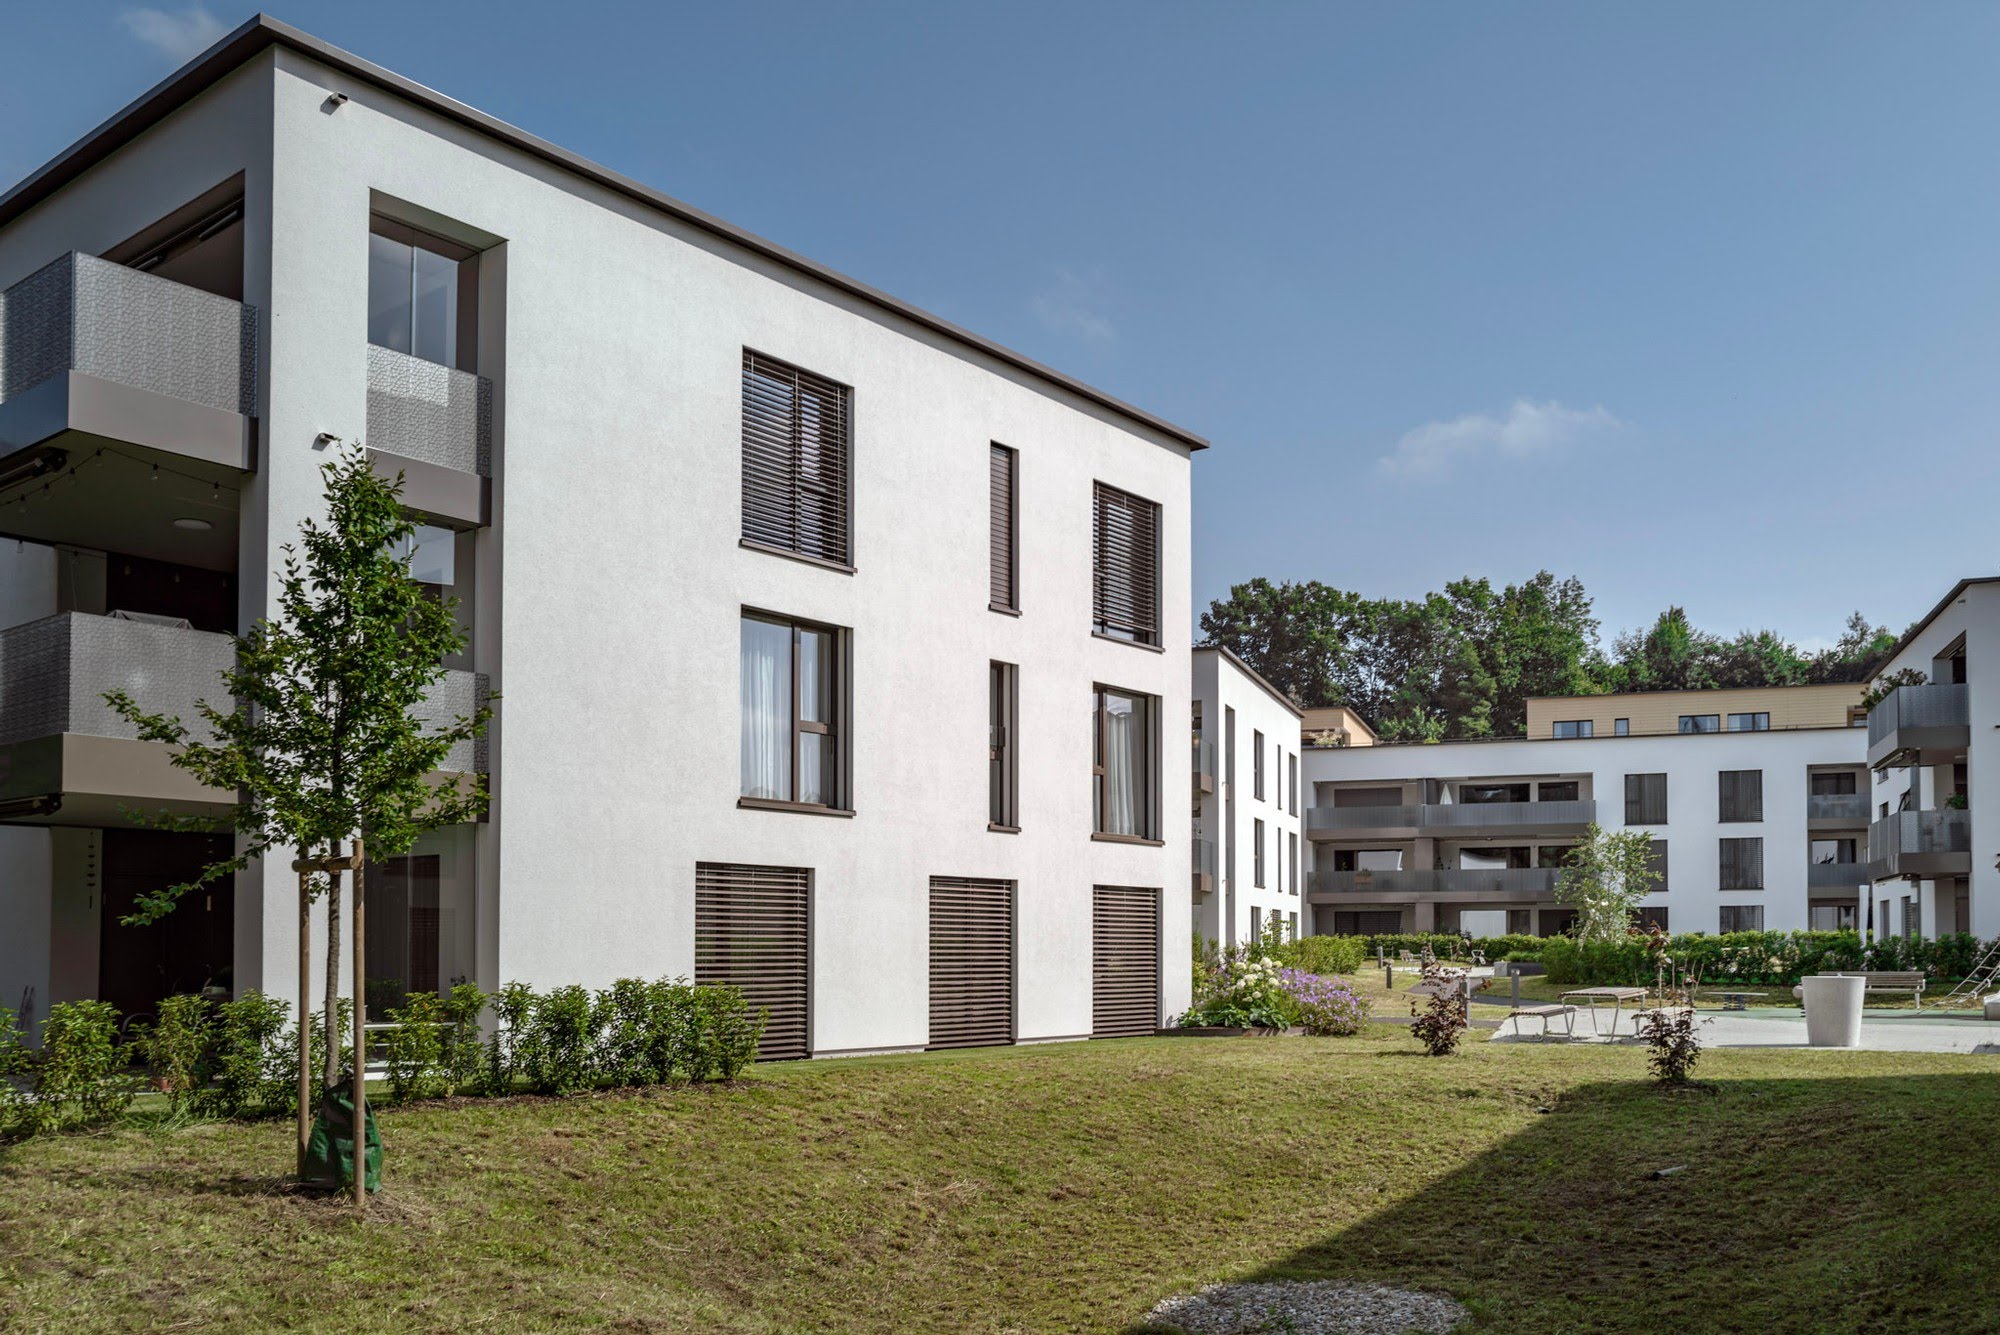 Wohnen MFH Wohnüberbauung Windbüelpark in Ruswil Architektur,Wohnungsbau,Wohnhäuser,Einfamilienhäuser,Mehrfamilienhäuser